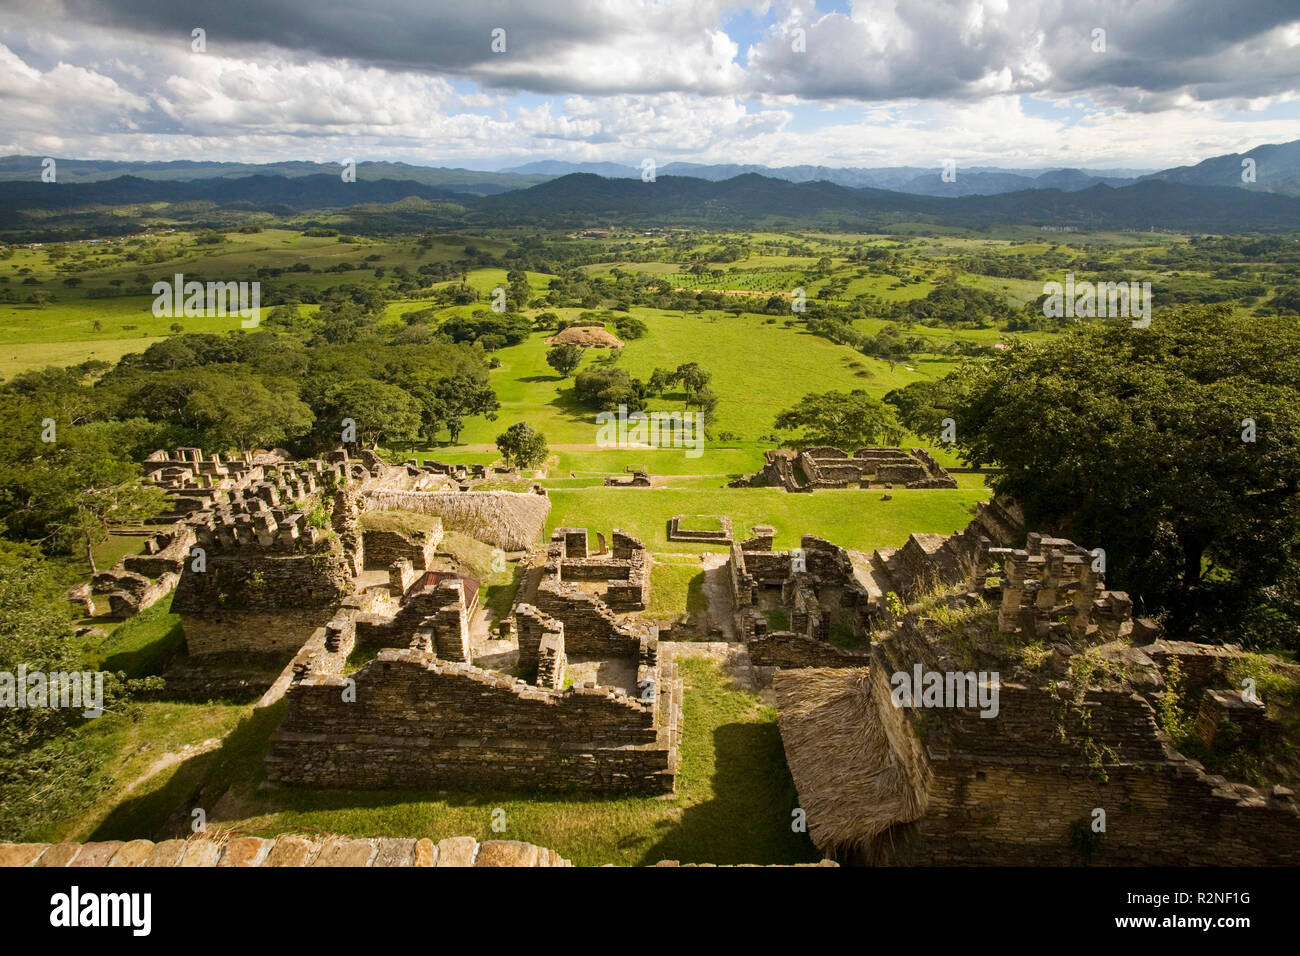 The Mayan ruins of Tonina, Chiapas, Mexico. Stock Photo